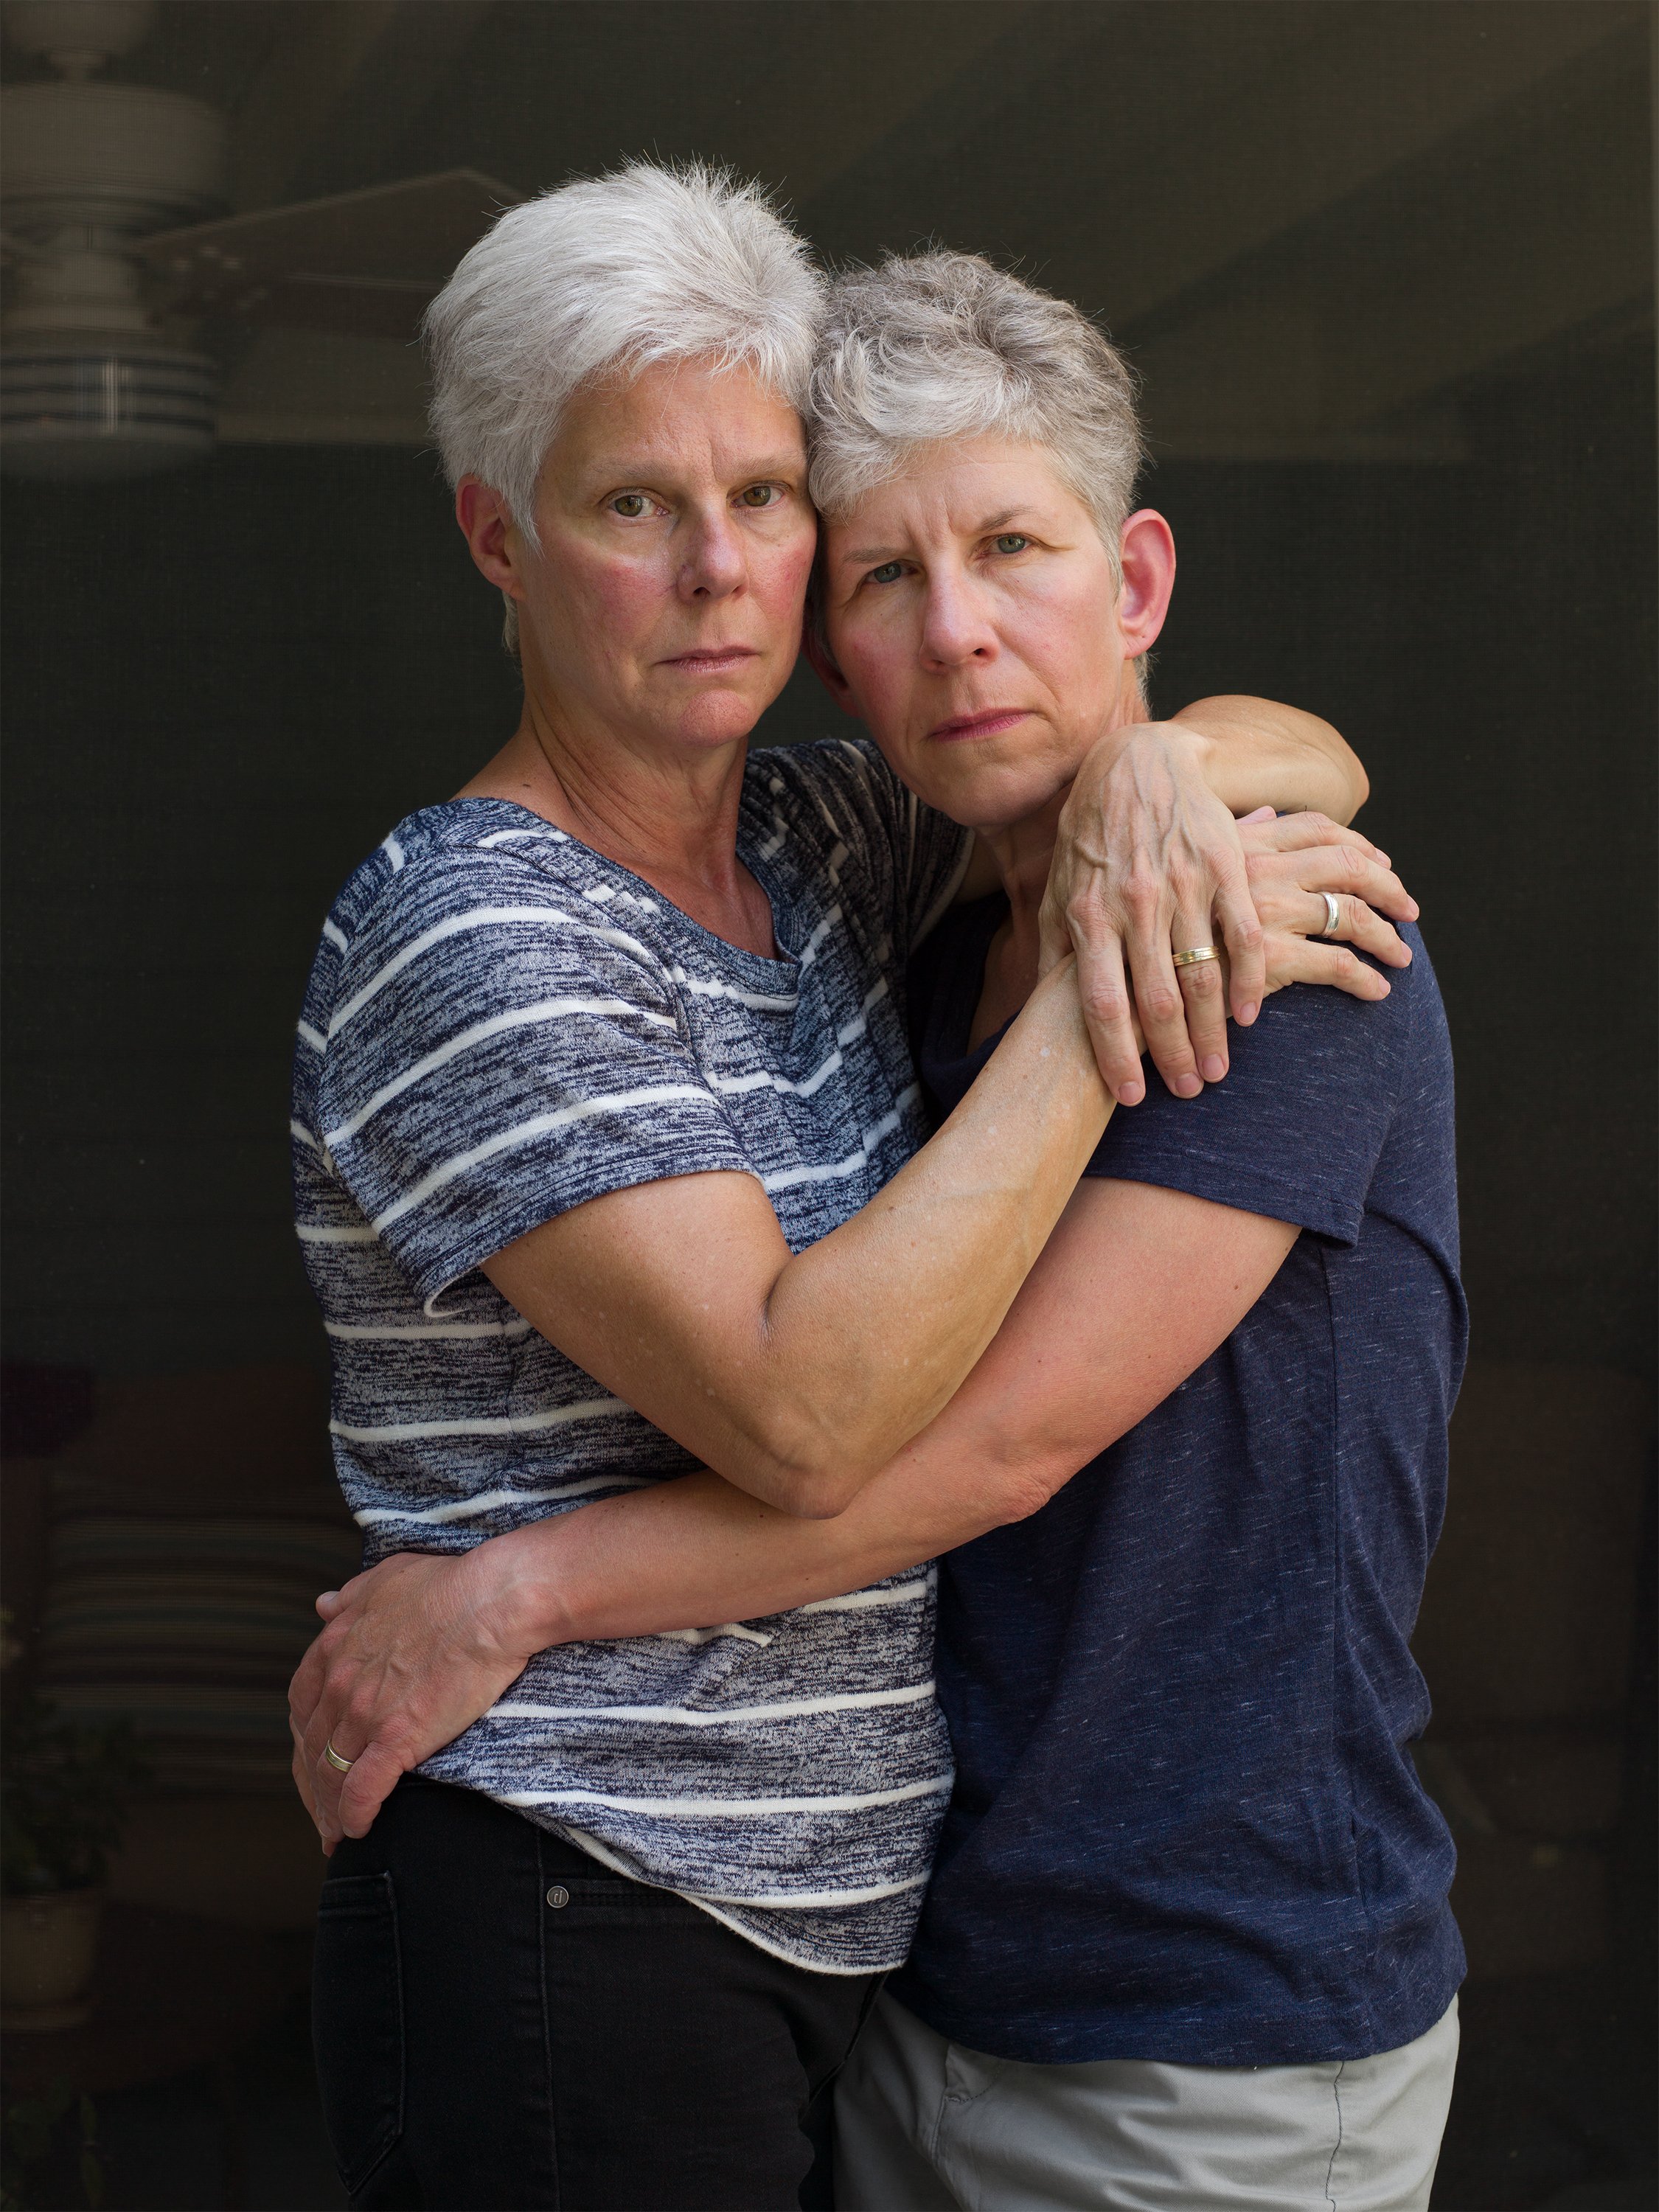  Mom and Chris, 2020 